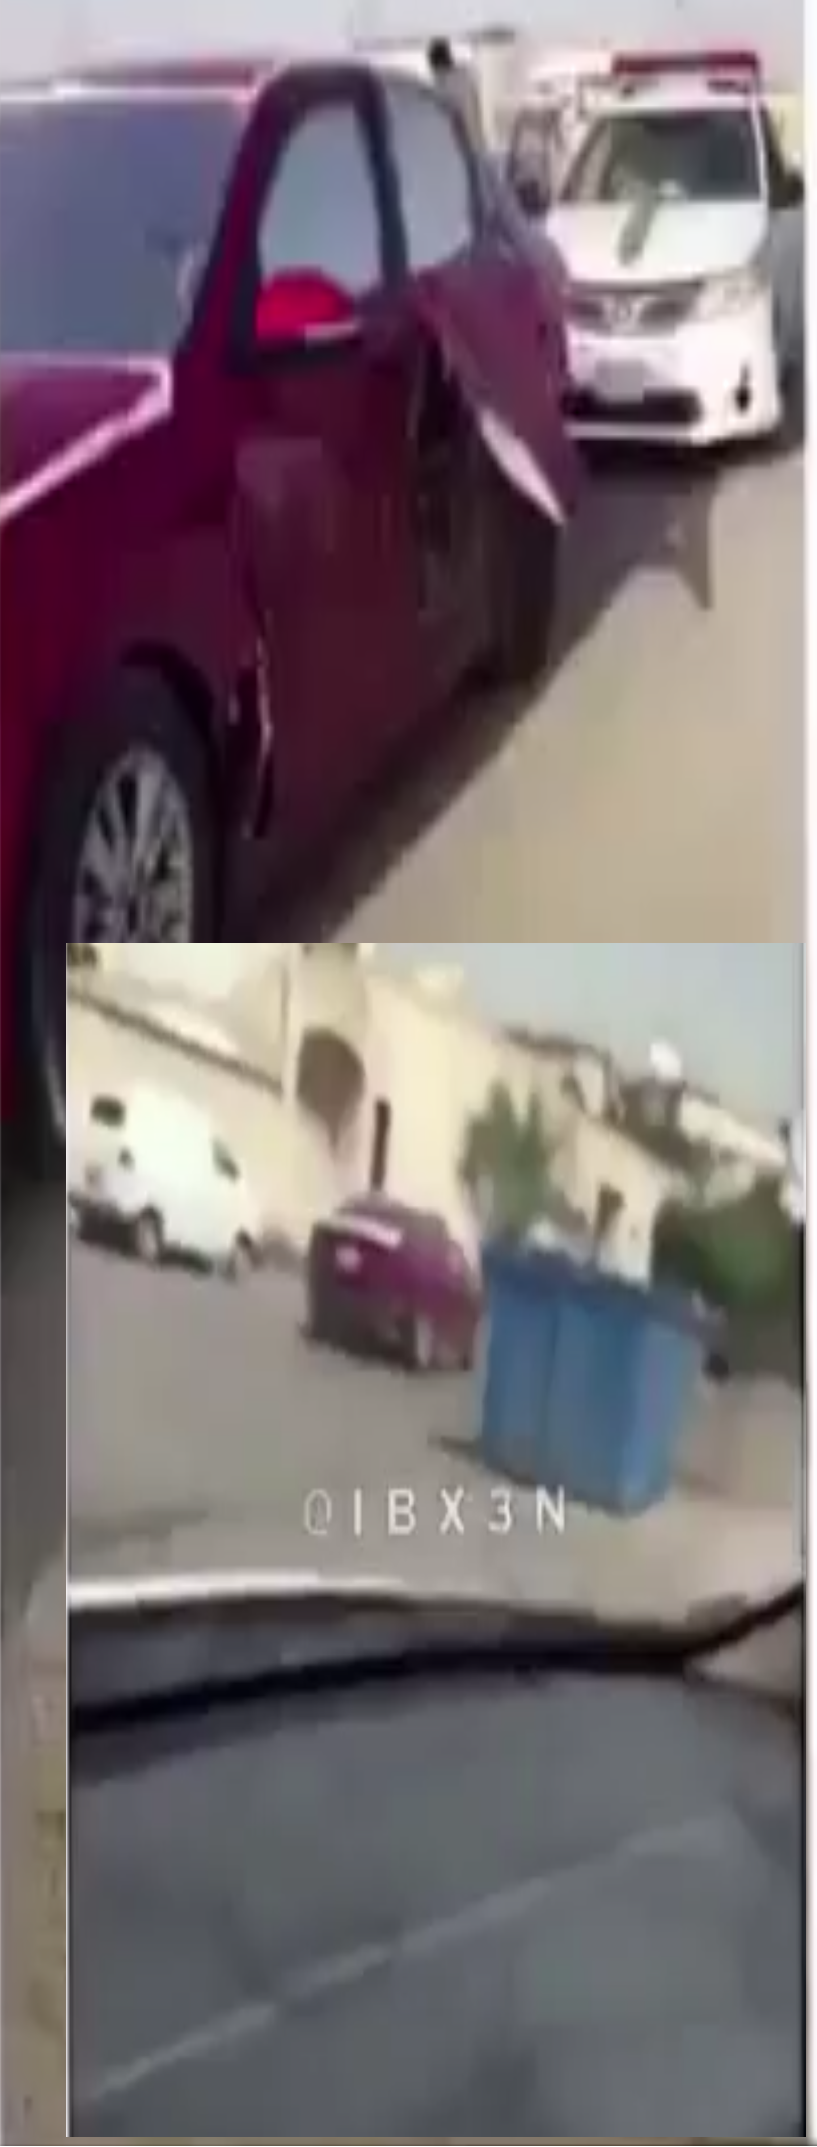 بالفيديو الدرباوية رجعوا سرقوا السيارة من الحجز وتحدوا الشرطة